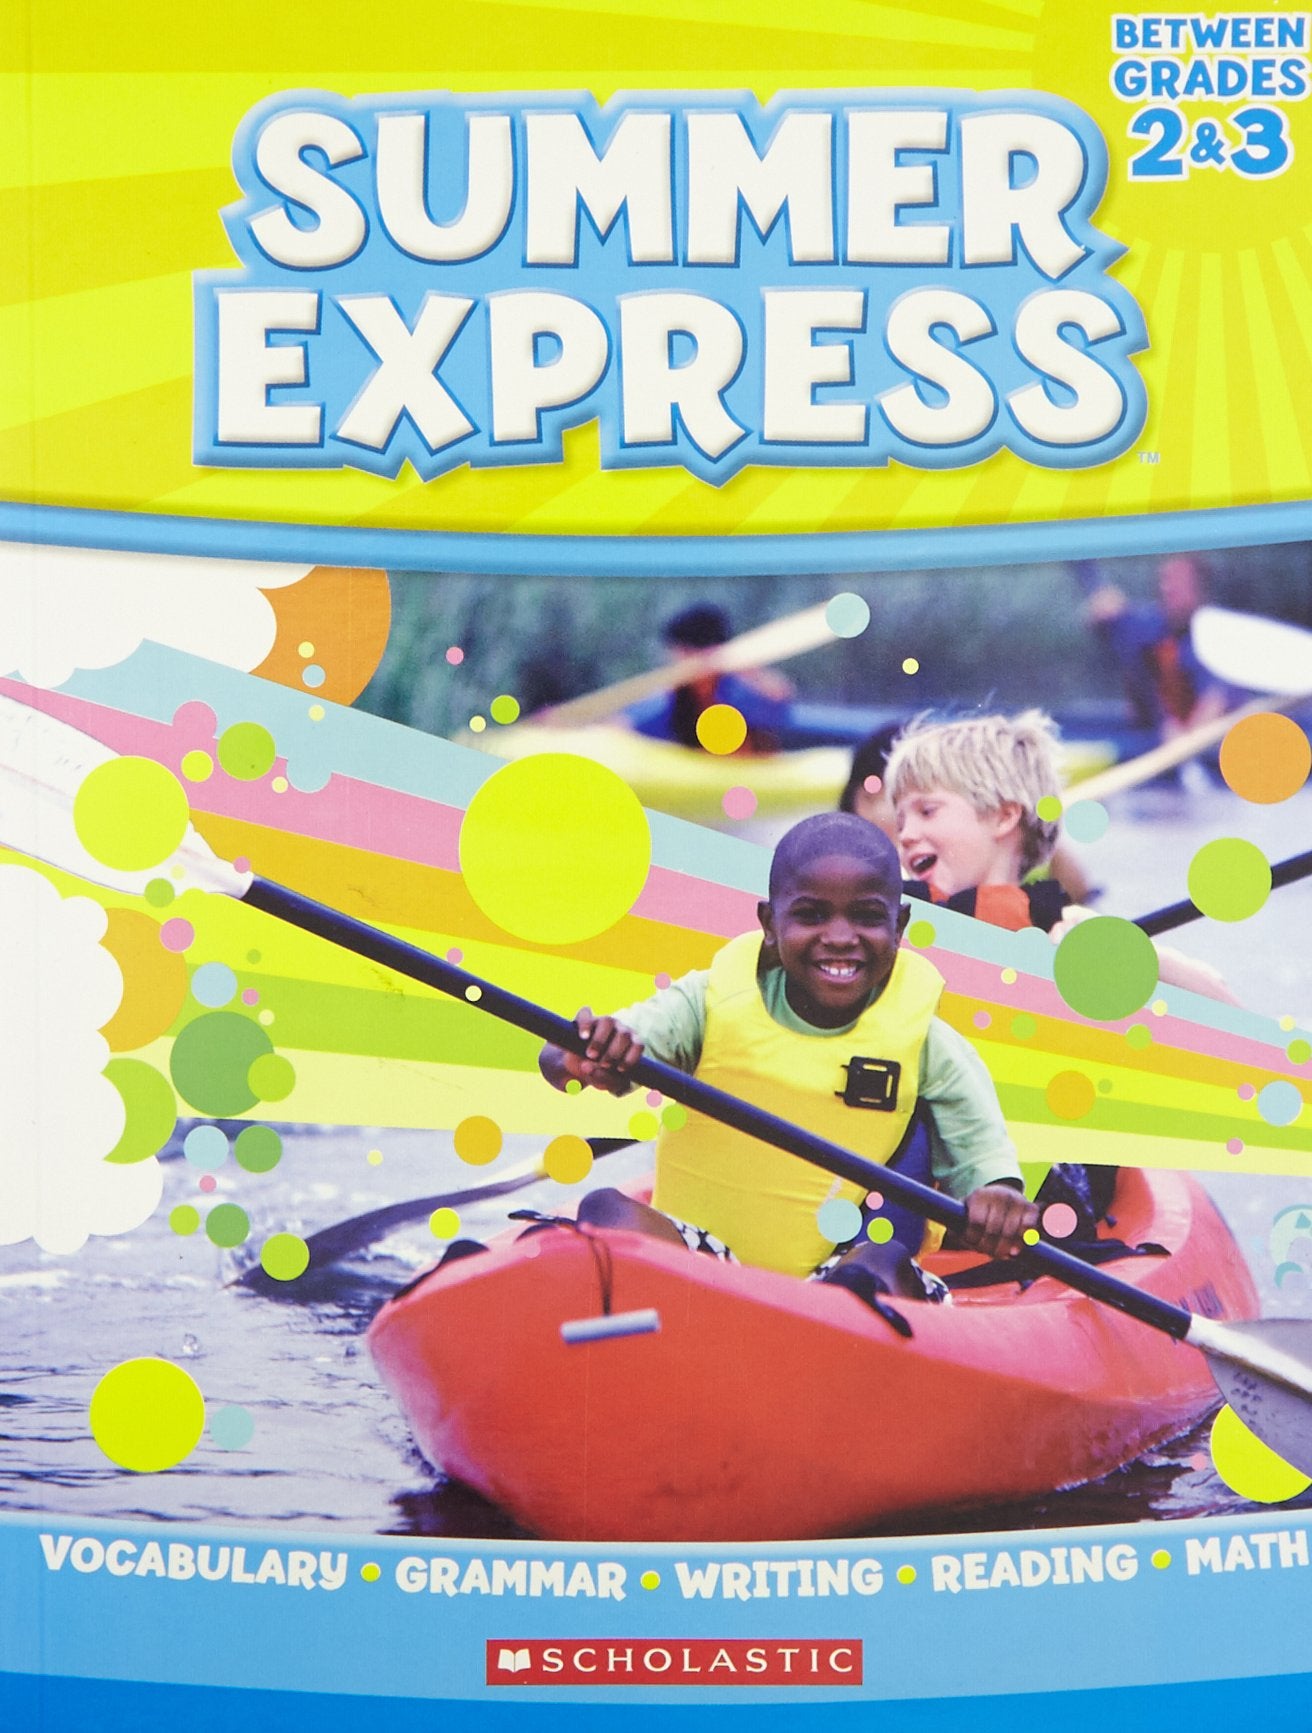 Summer Express: Vocabulary, Grammar, Writing, Reading & Math (Grade 2 & 3)